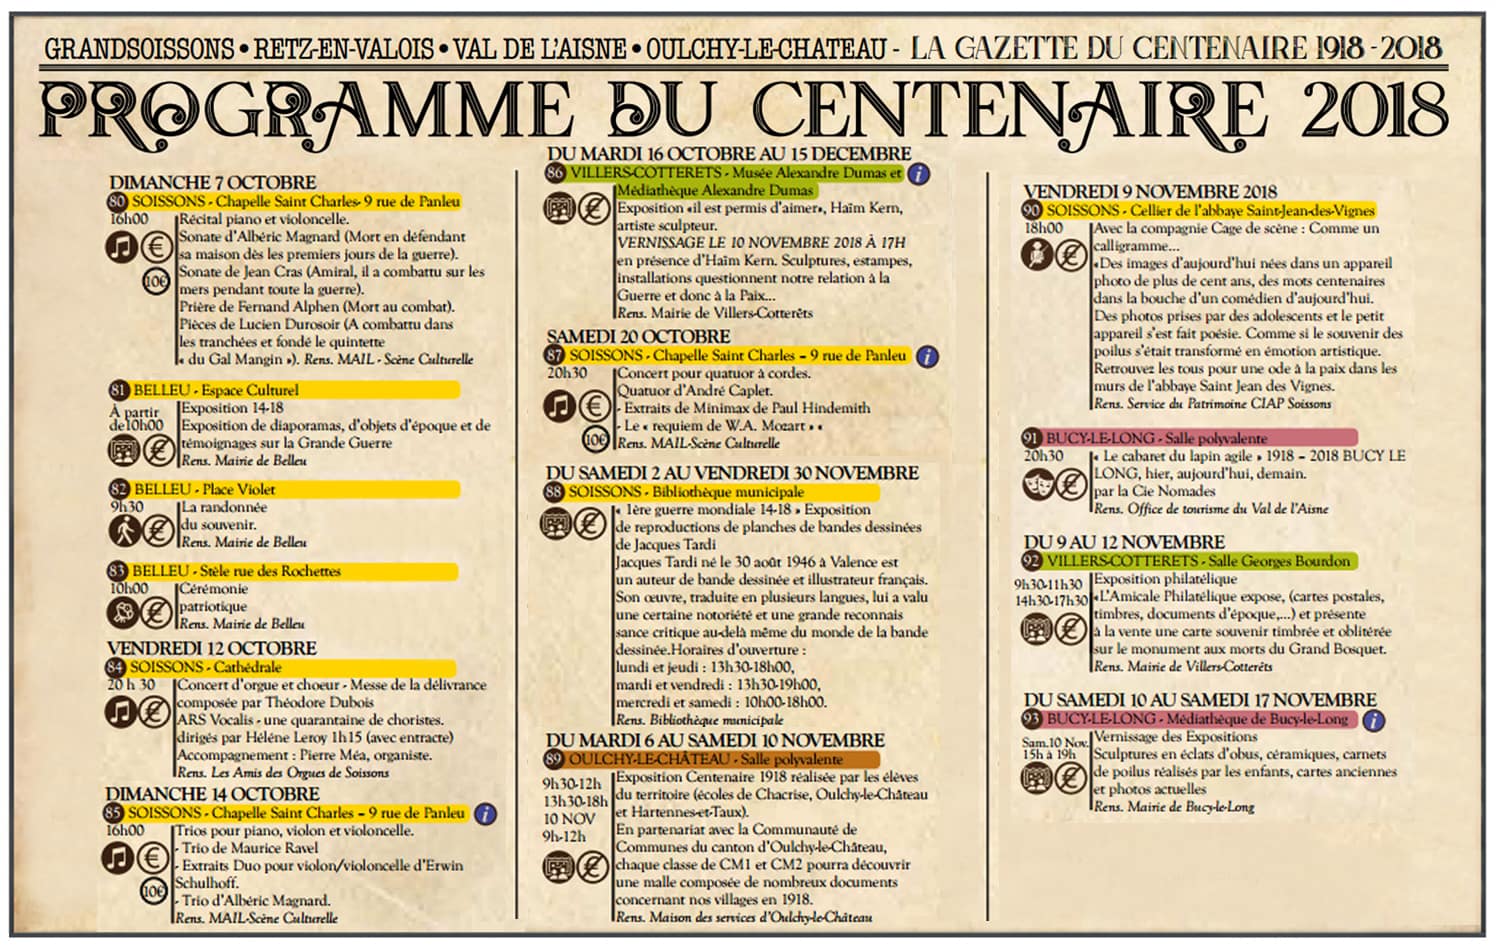 Expositions centenaire dans l'Aisne (06)-min.jpg